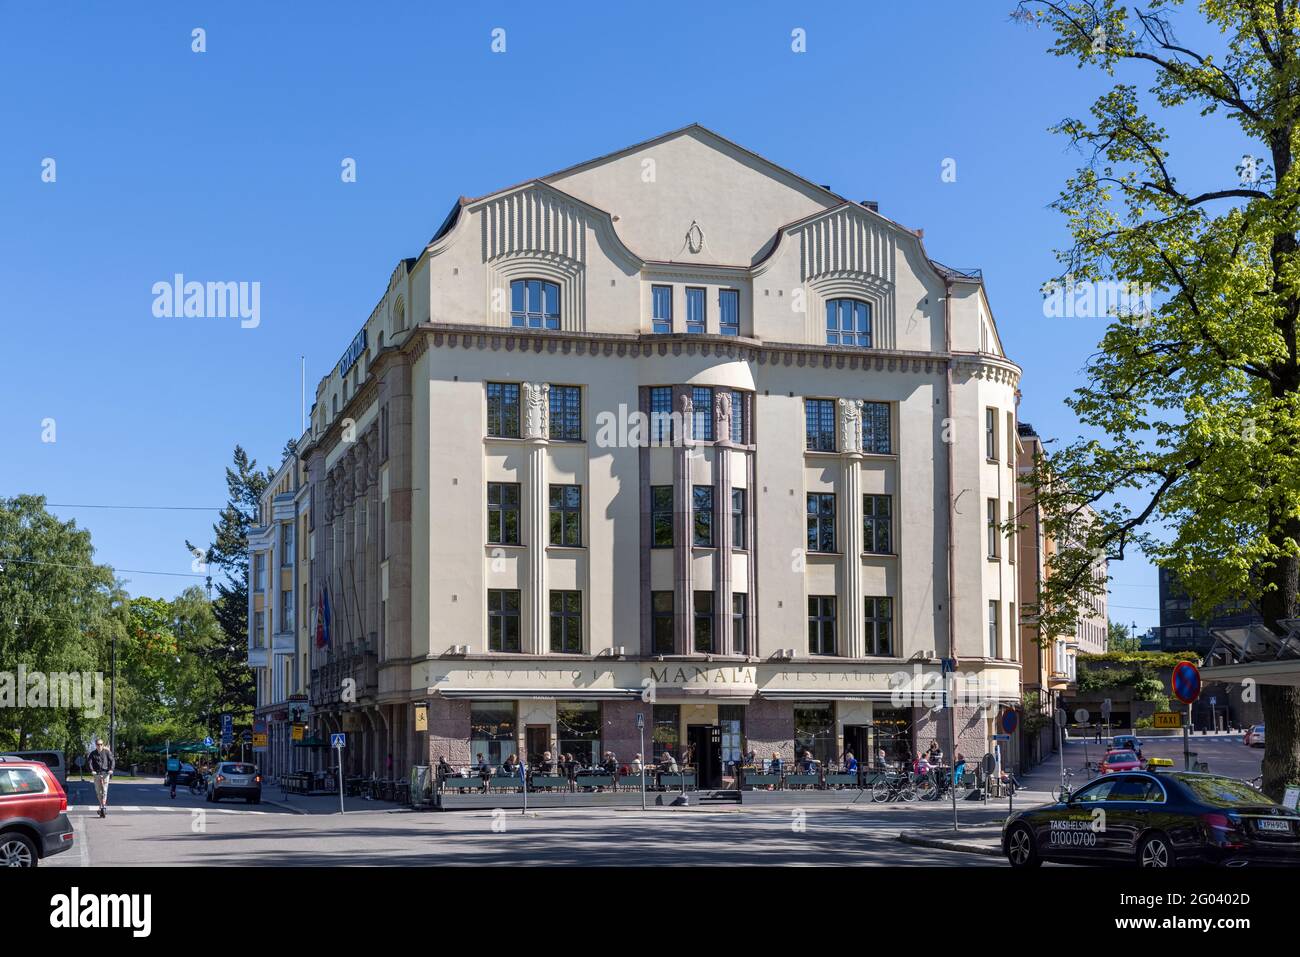 Gli edifici antichi della capitale finlandese, Helsinki, sono stati costruiti durante un lungo periodo di tempo. Ogni edificio mostra l'architettura popolare alla sua epoca. Foto Stock